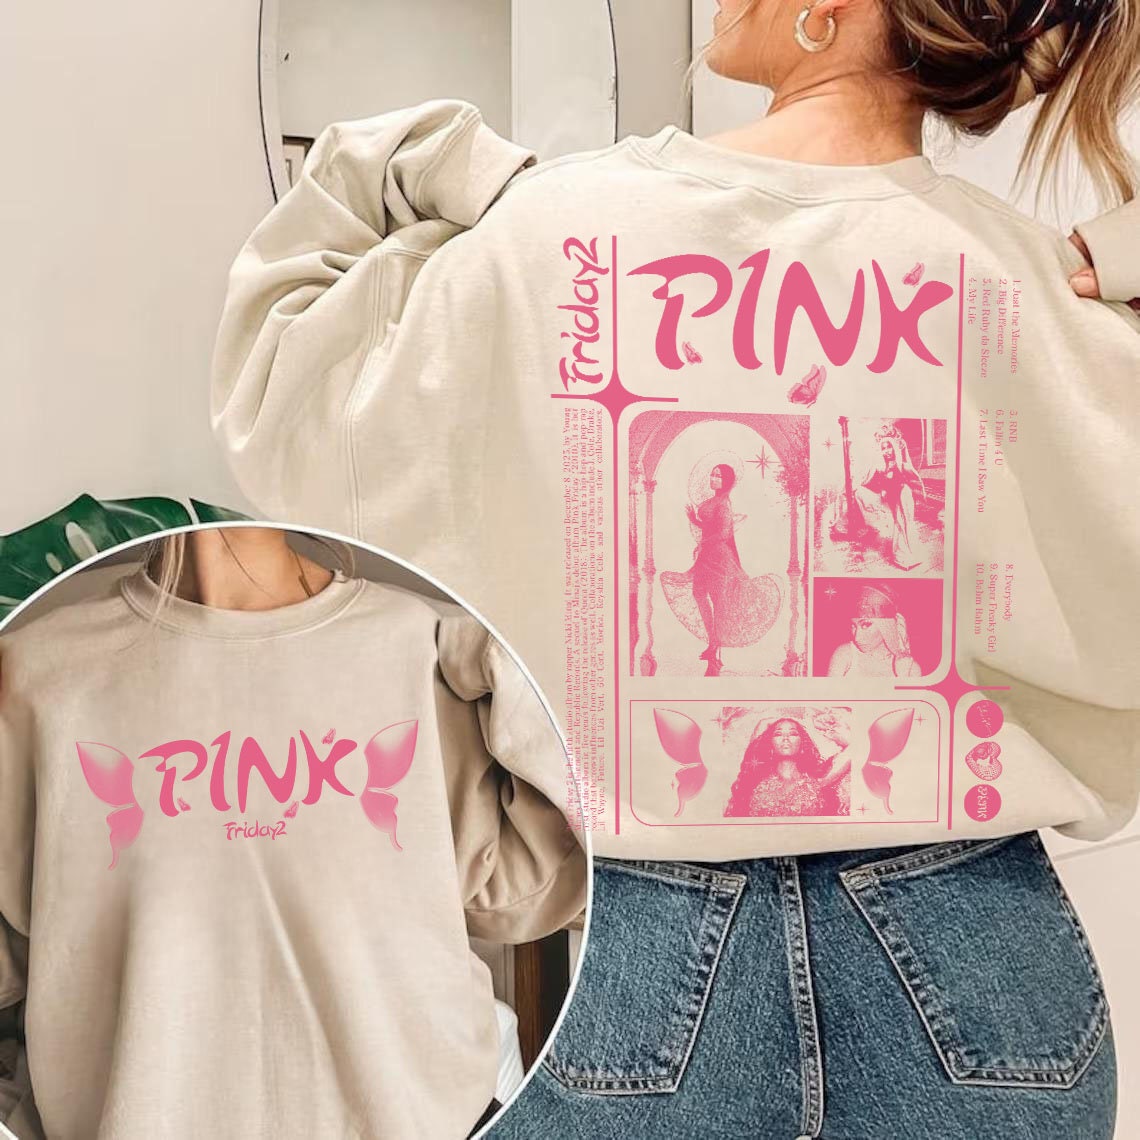 Nicki Minaj Pink Friday 2 Tour Shirt, Gag City Hoodie